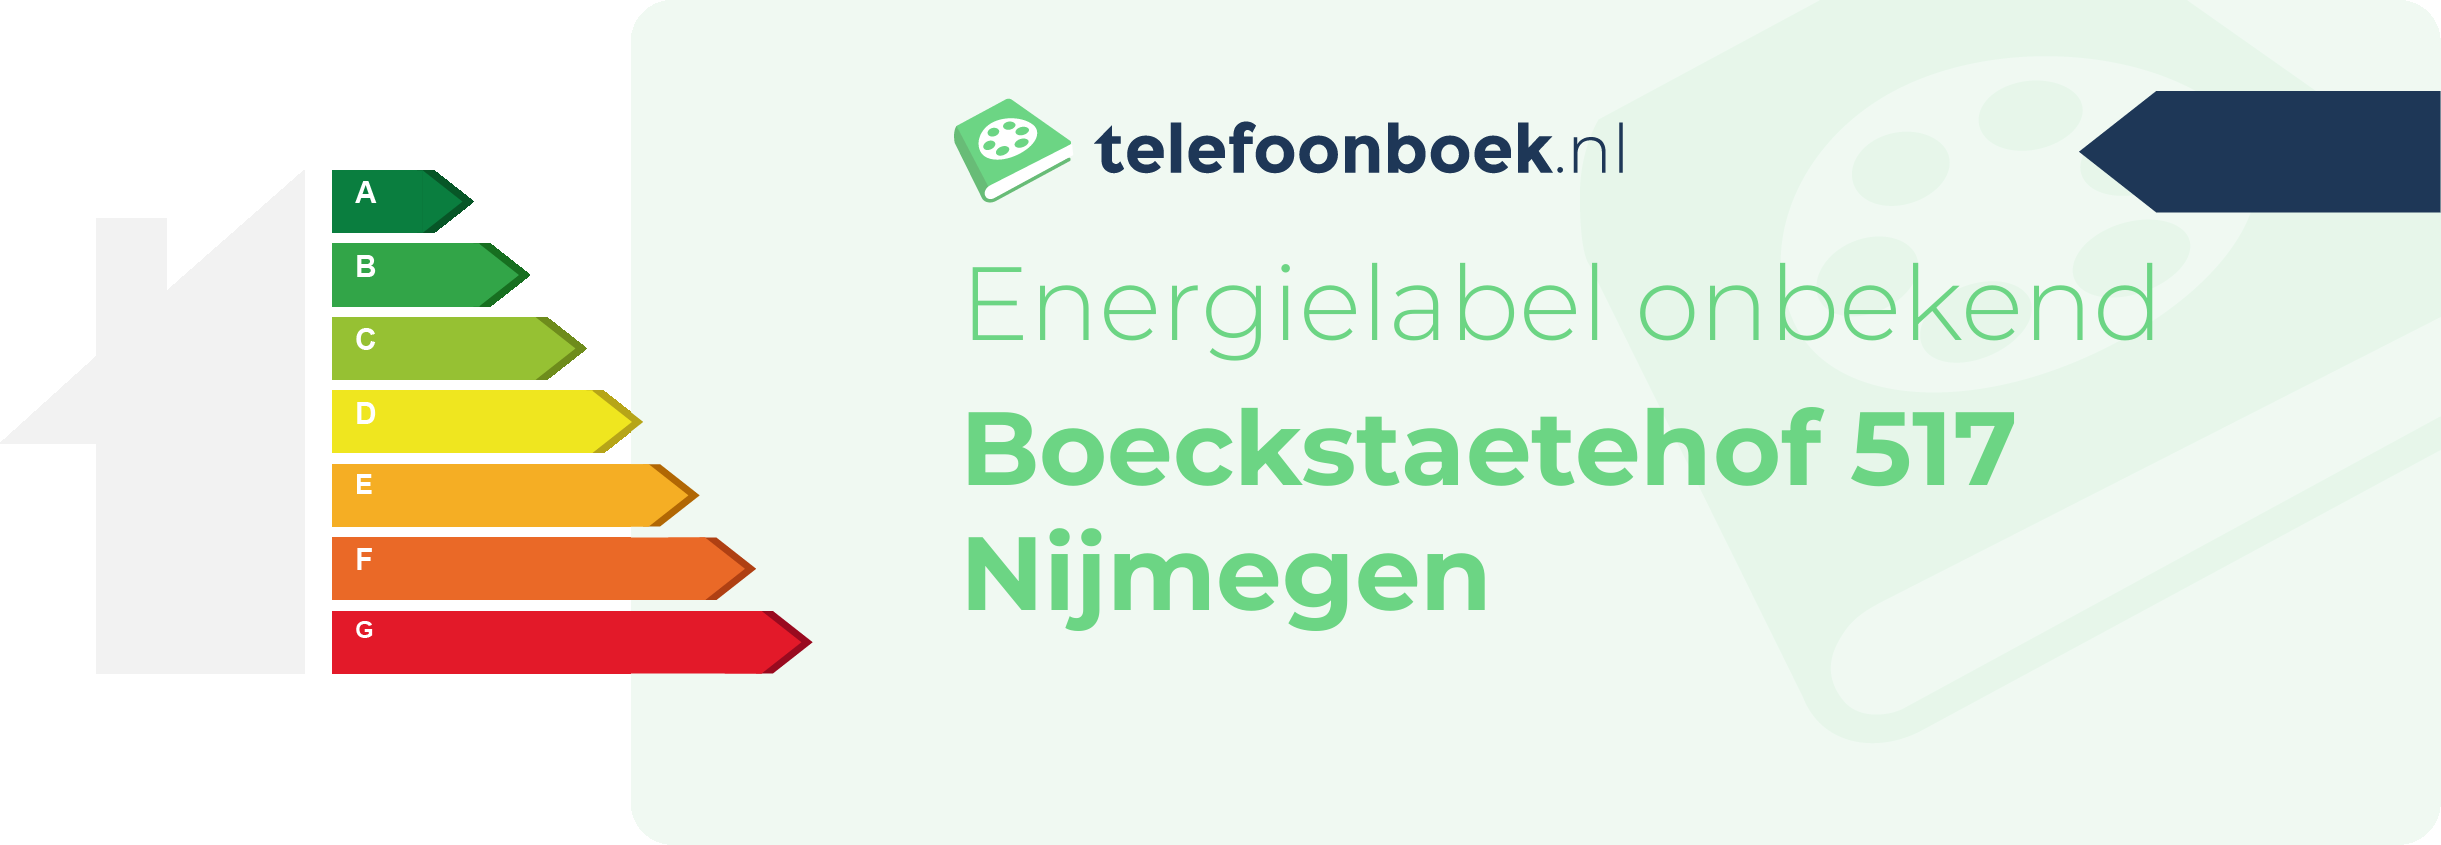 Energielabel Boeckstaetehof 517 Nijmegen